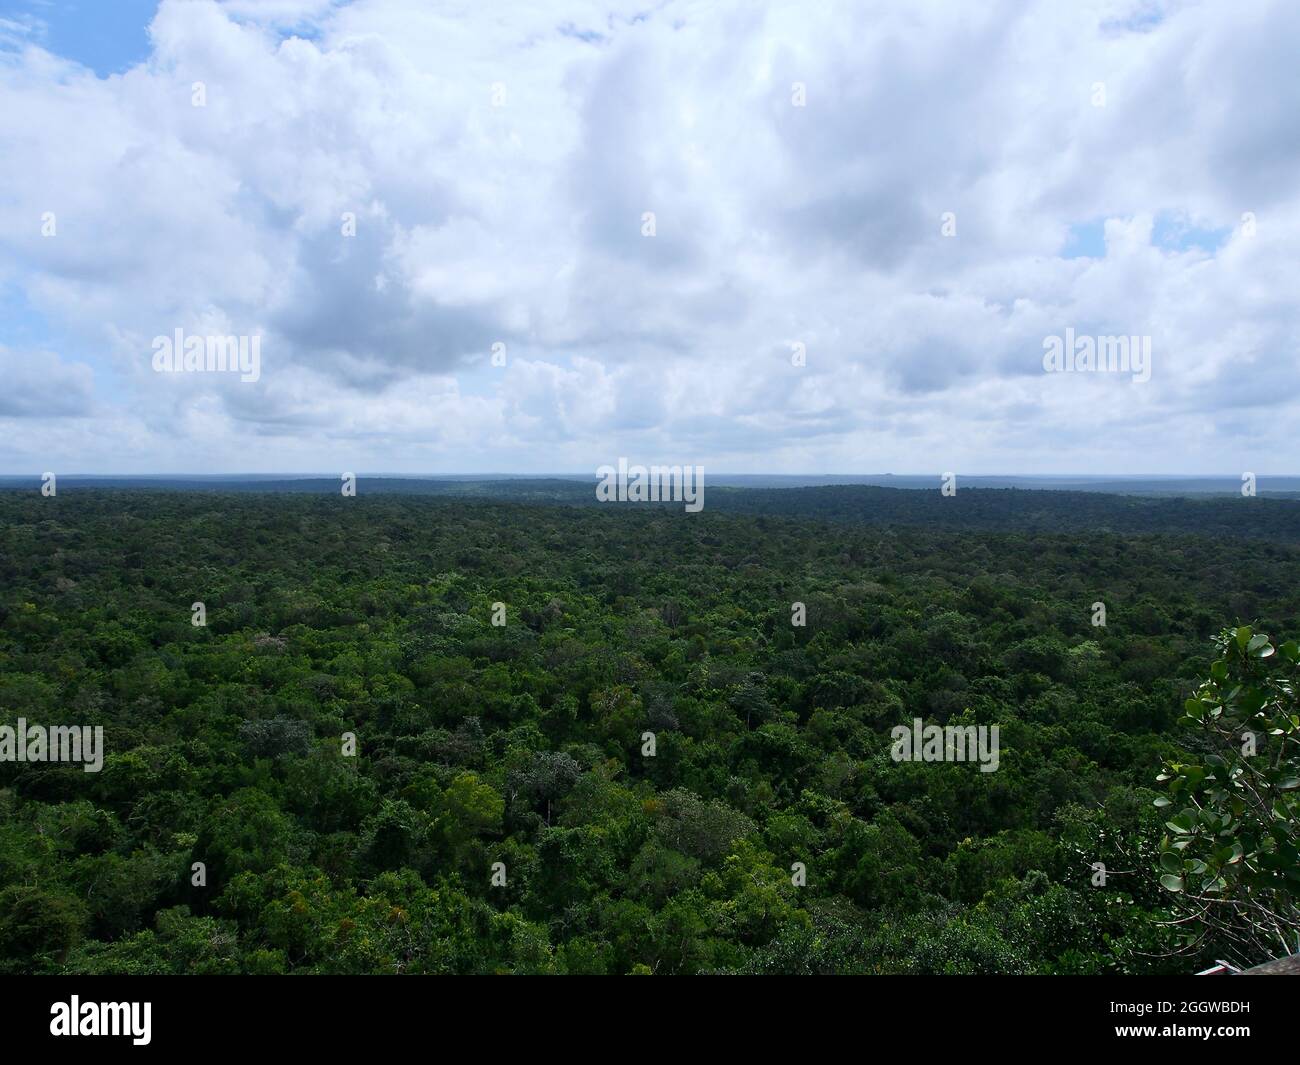 El Peten jungle, Guatemala Stock Photo